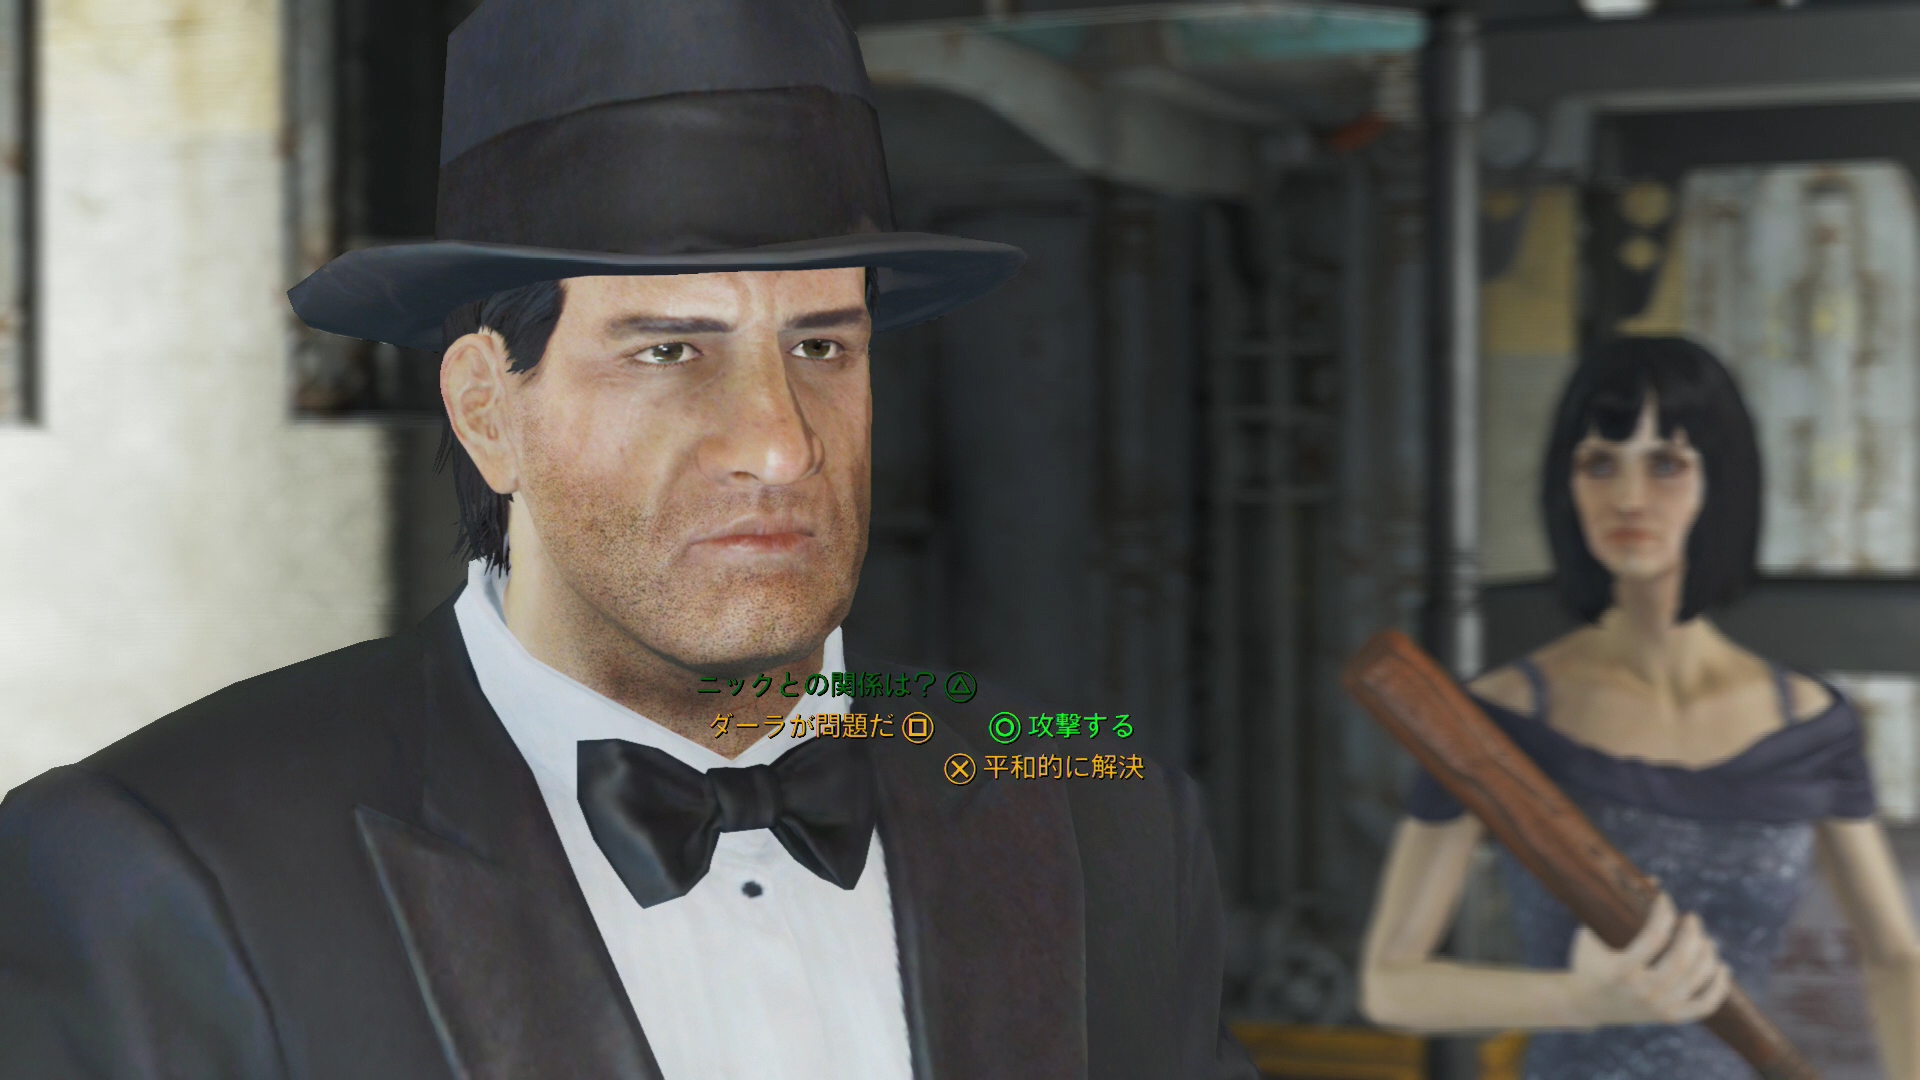 拡大画像 Fallout 4連載 廃墟は宝の山 紳士のスーツはガラクタでいっぱい 4 24 Game Watch Watch